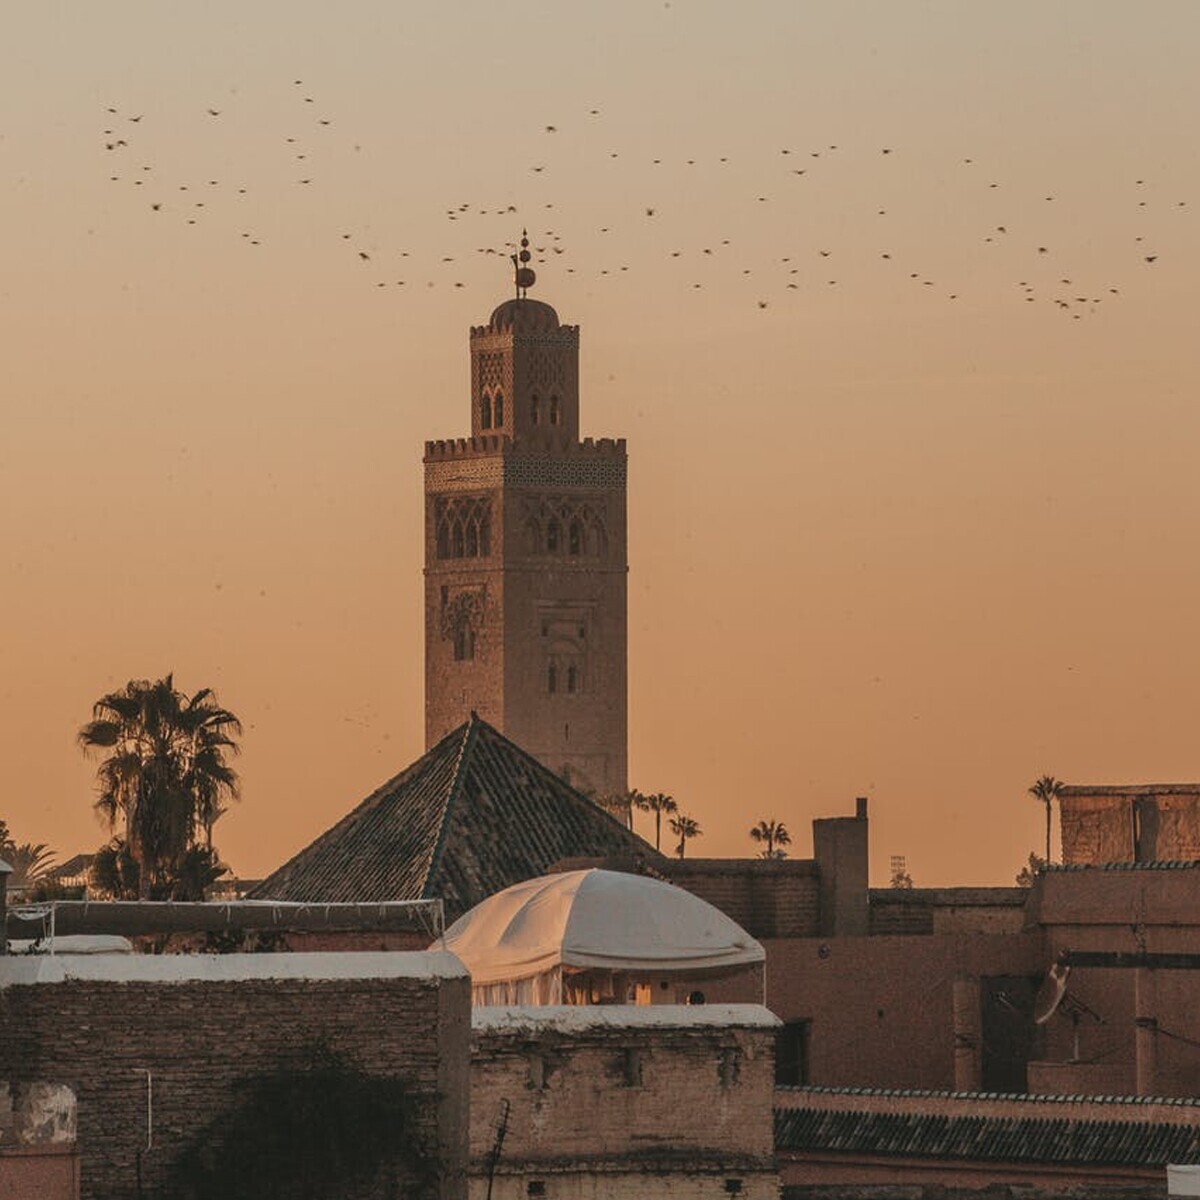 Vizesiz 5 Gün Tüm Turlar Dahil Yarım Pansiyon Casablanca - Marrakech Turu (Bayramlarda Geçerli)